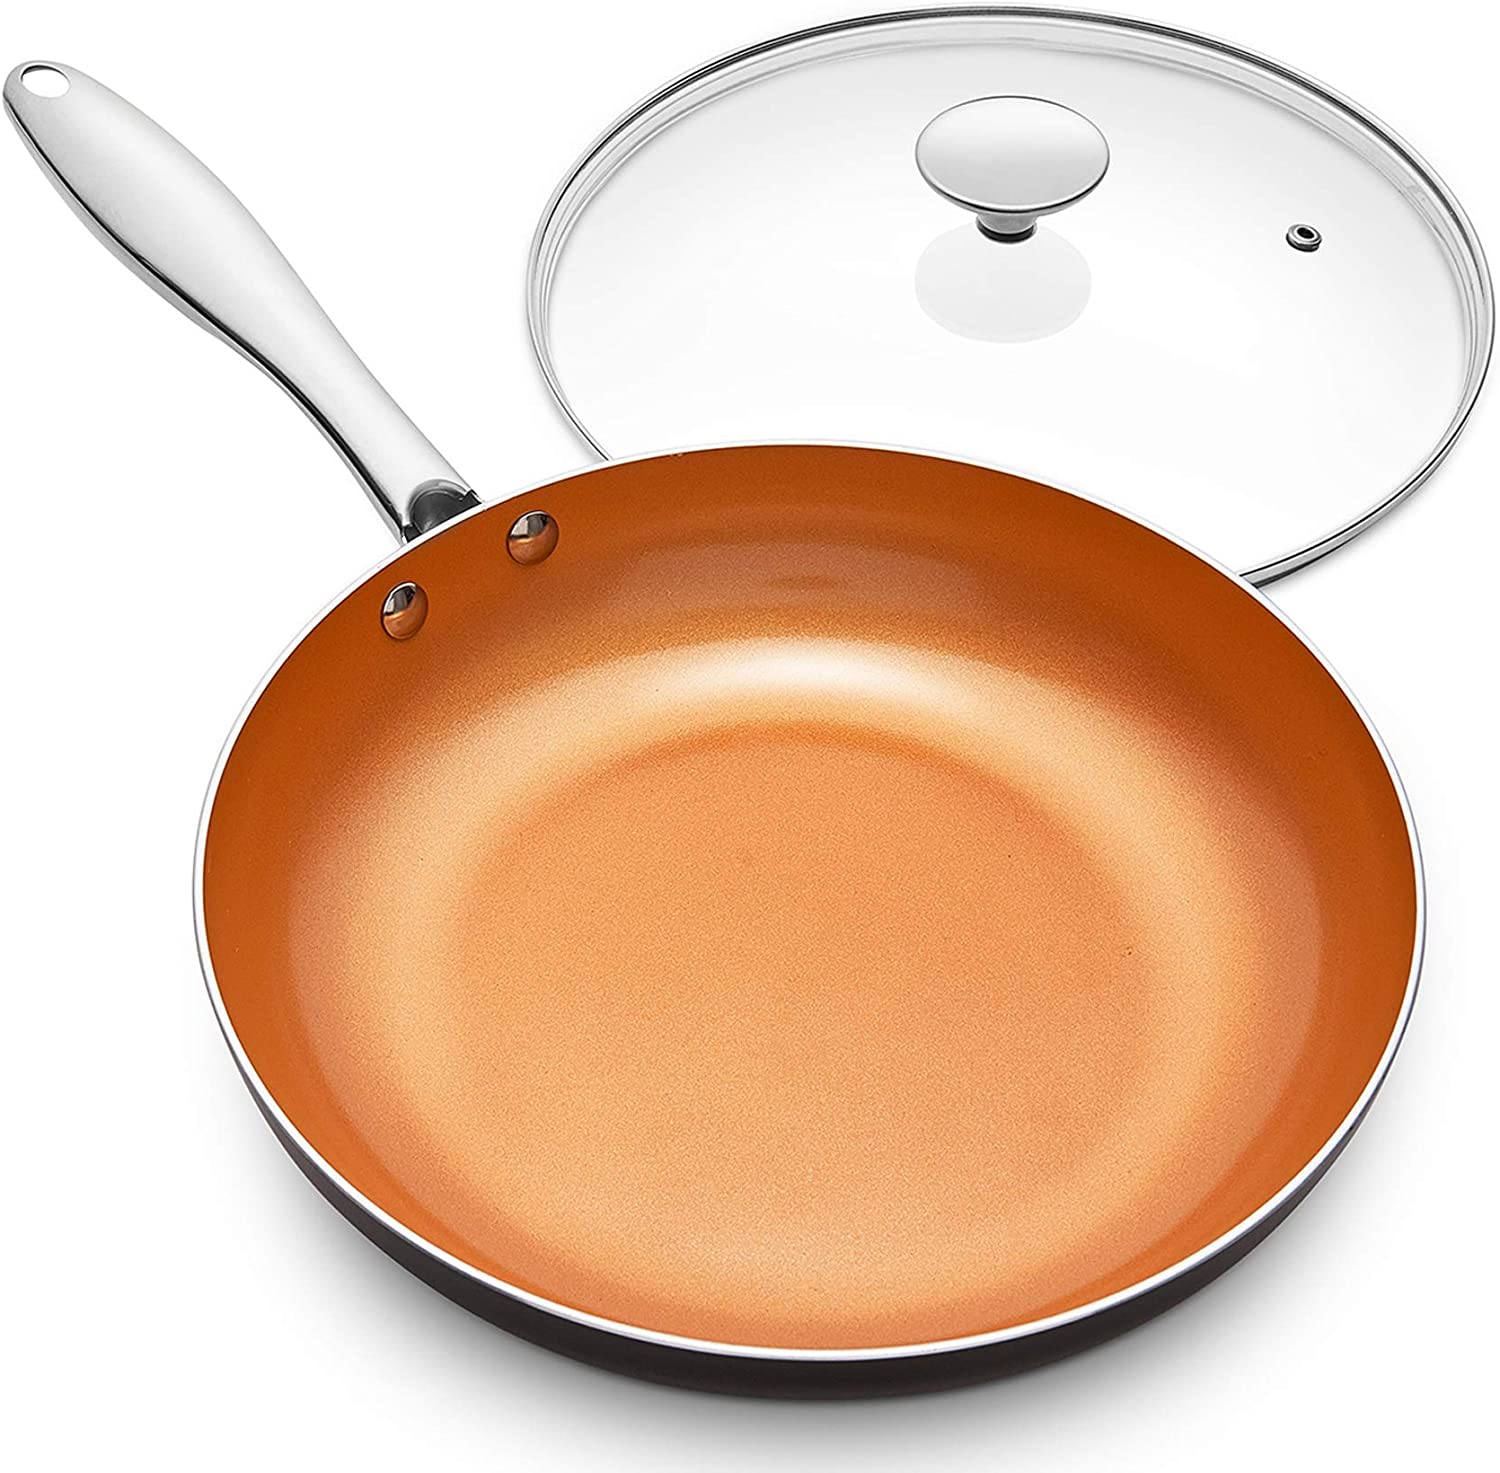 MICHELANGELO 12 Inch Nonstick Copper Frying Pan with Lid 